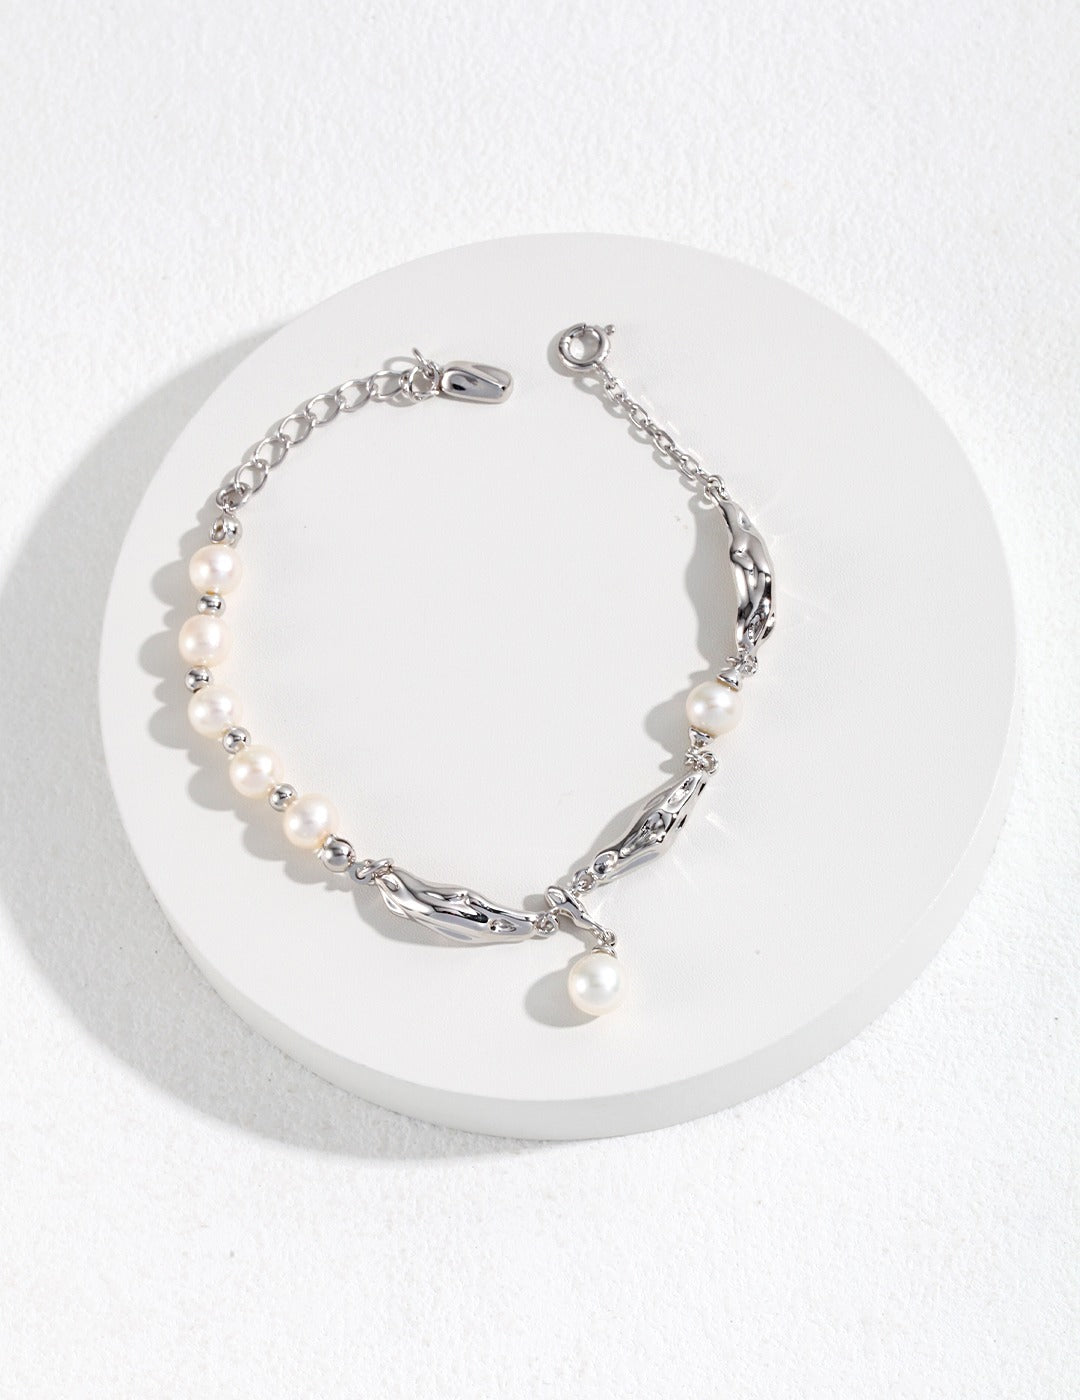 Sterling Silver Pearl Bracelet